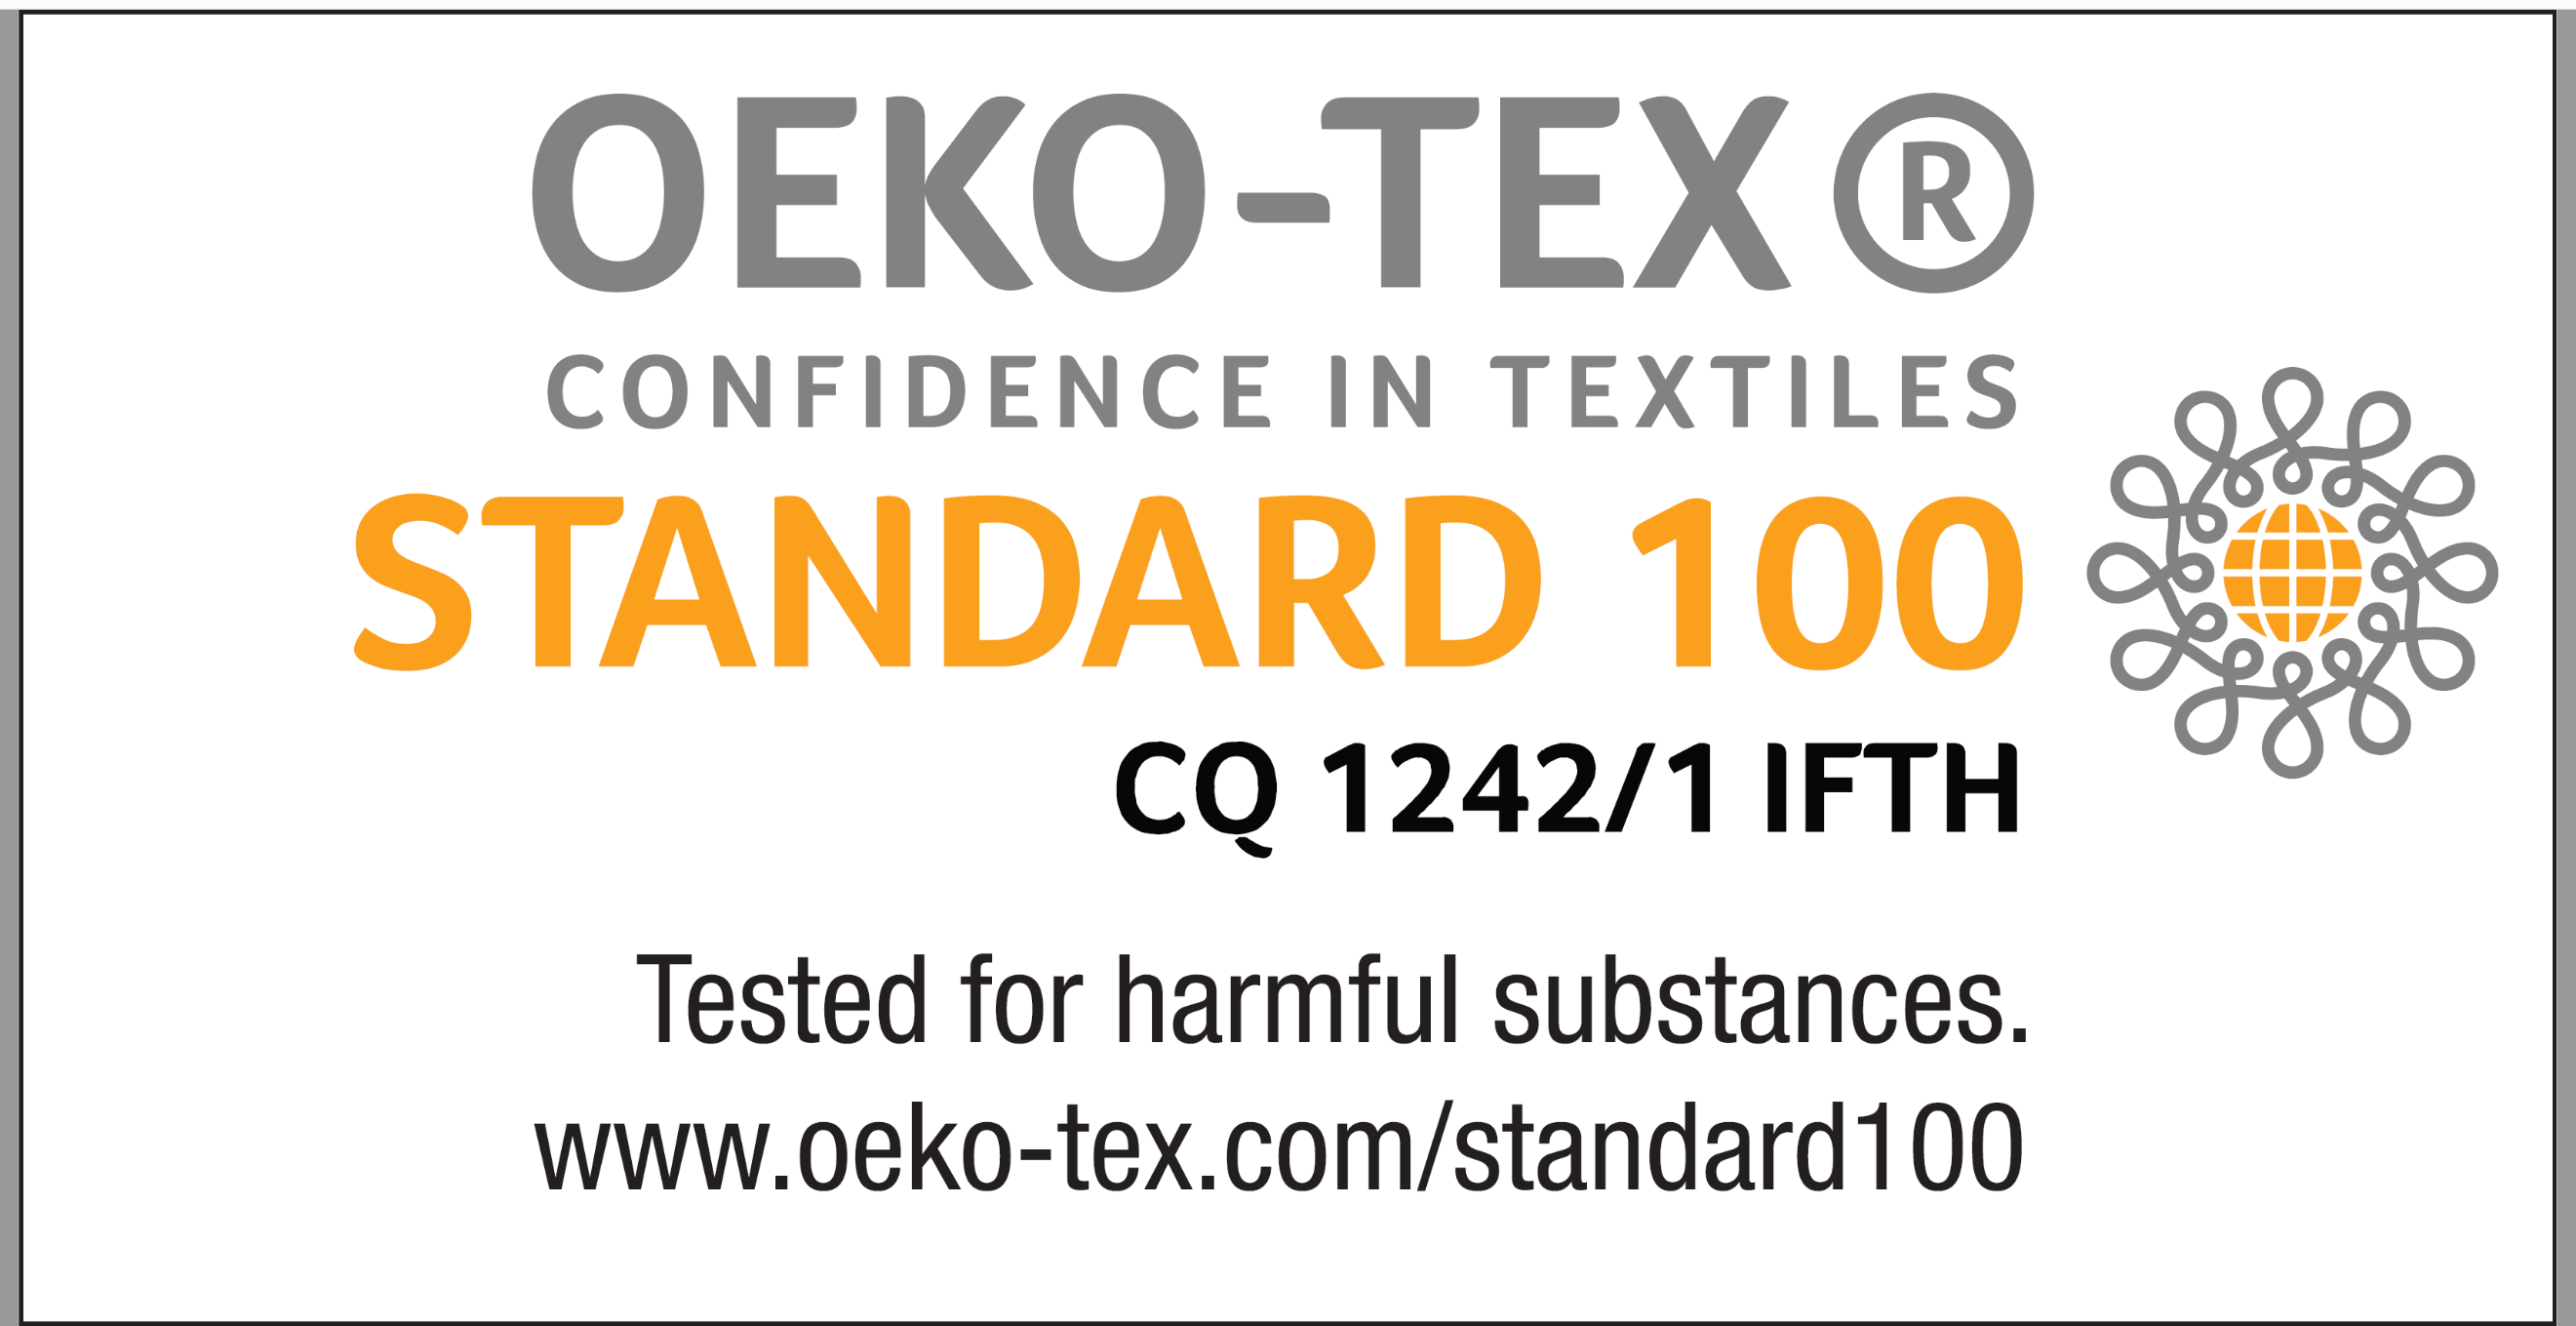 OEKOTEX STANDARD 100 Class 1 Certification: “for a better